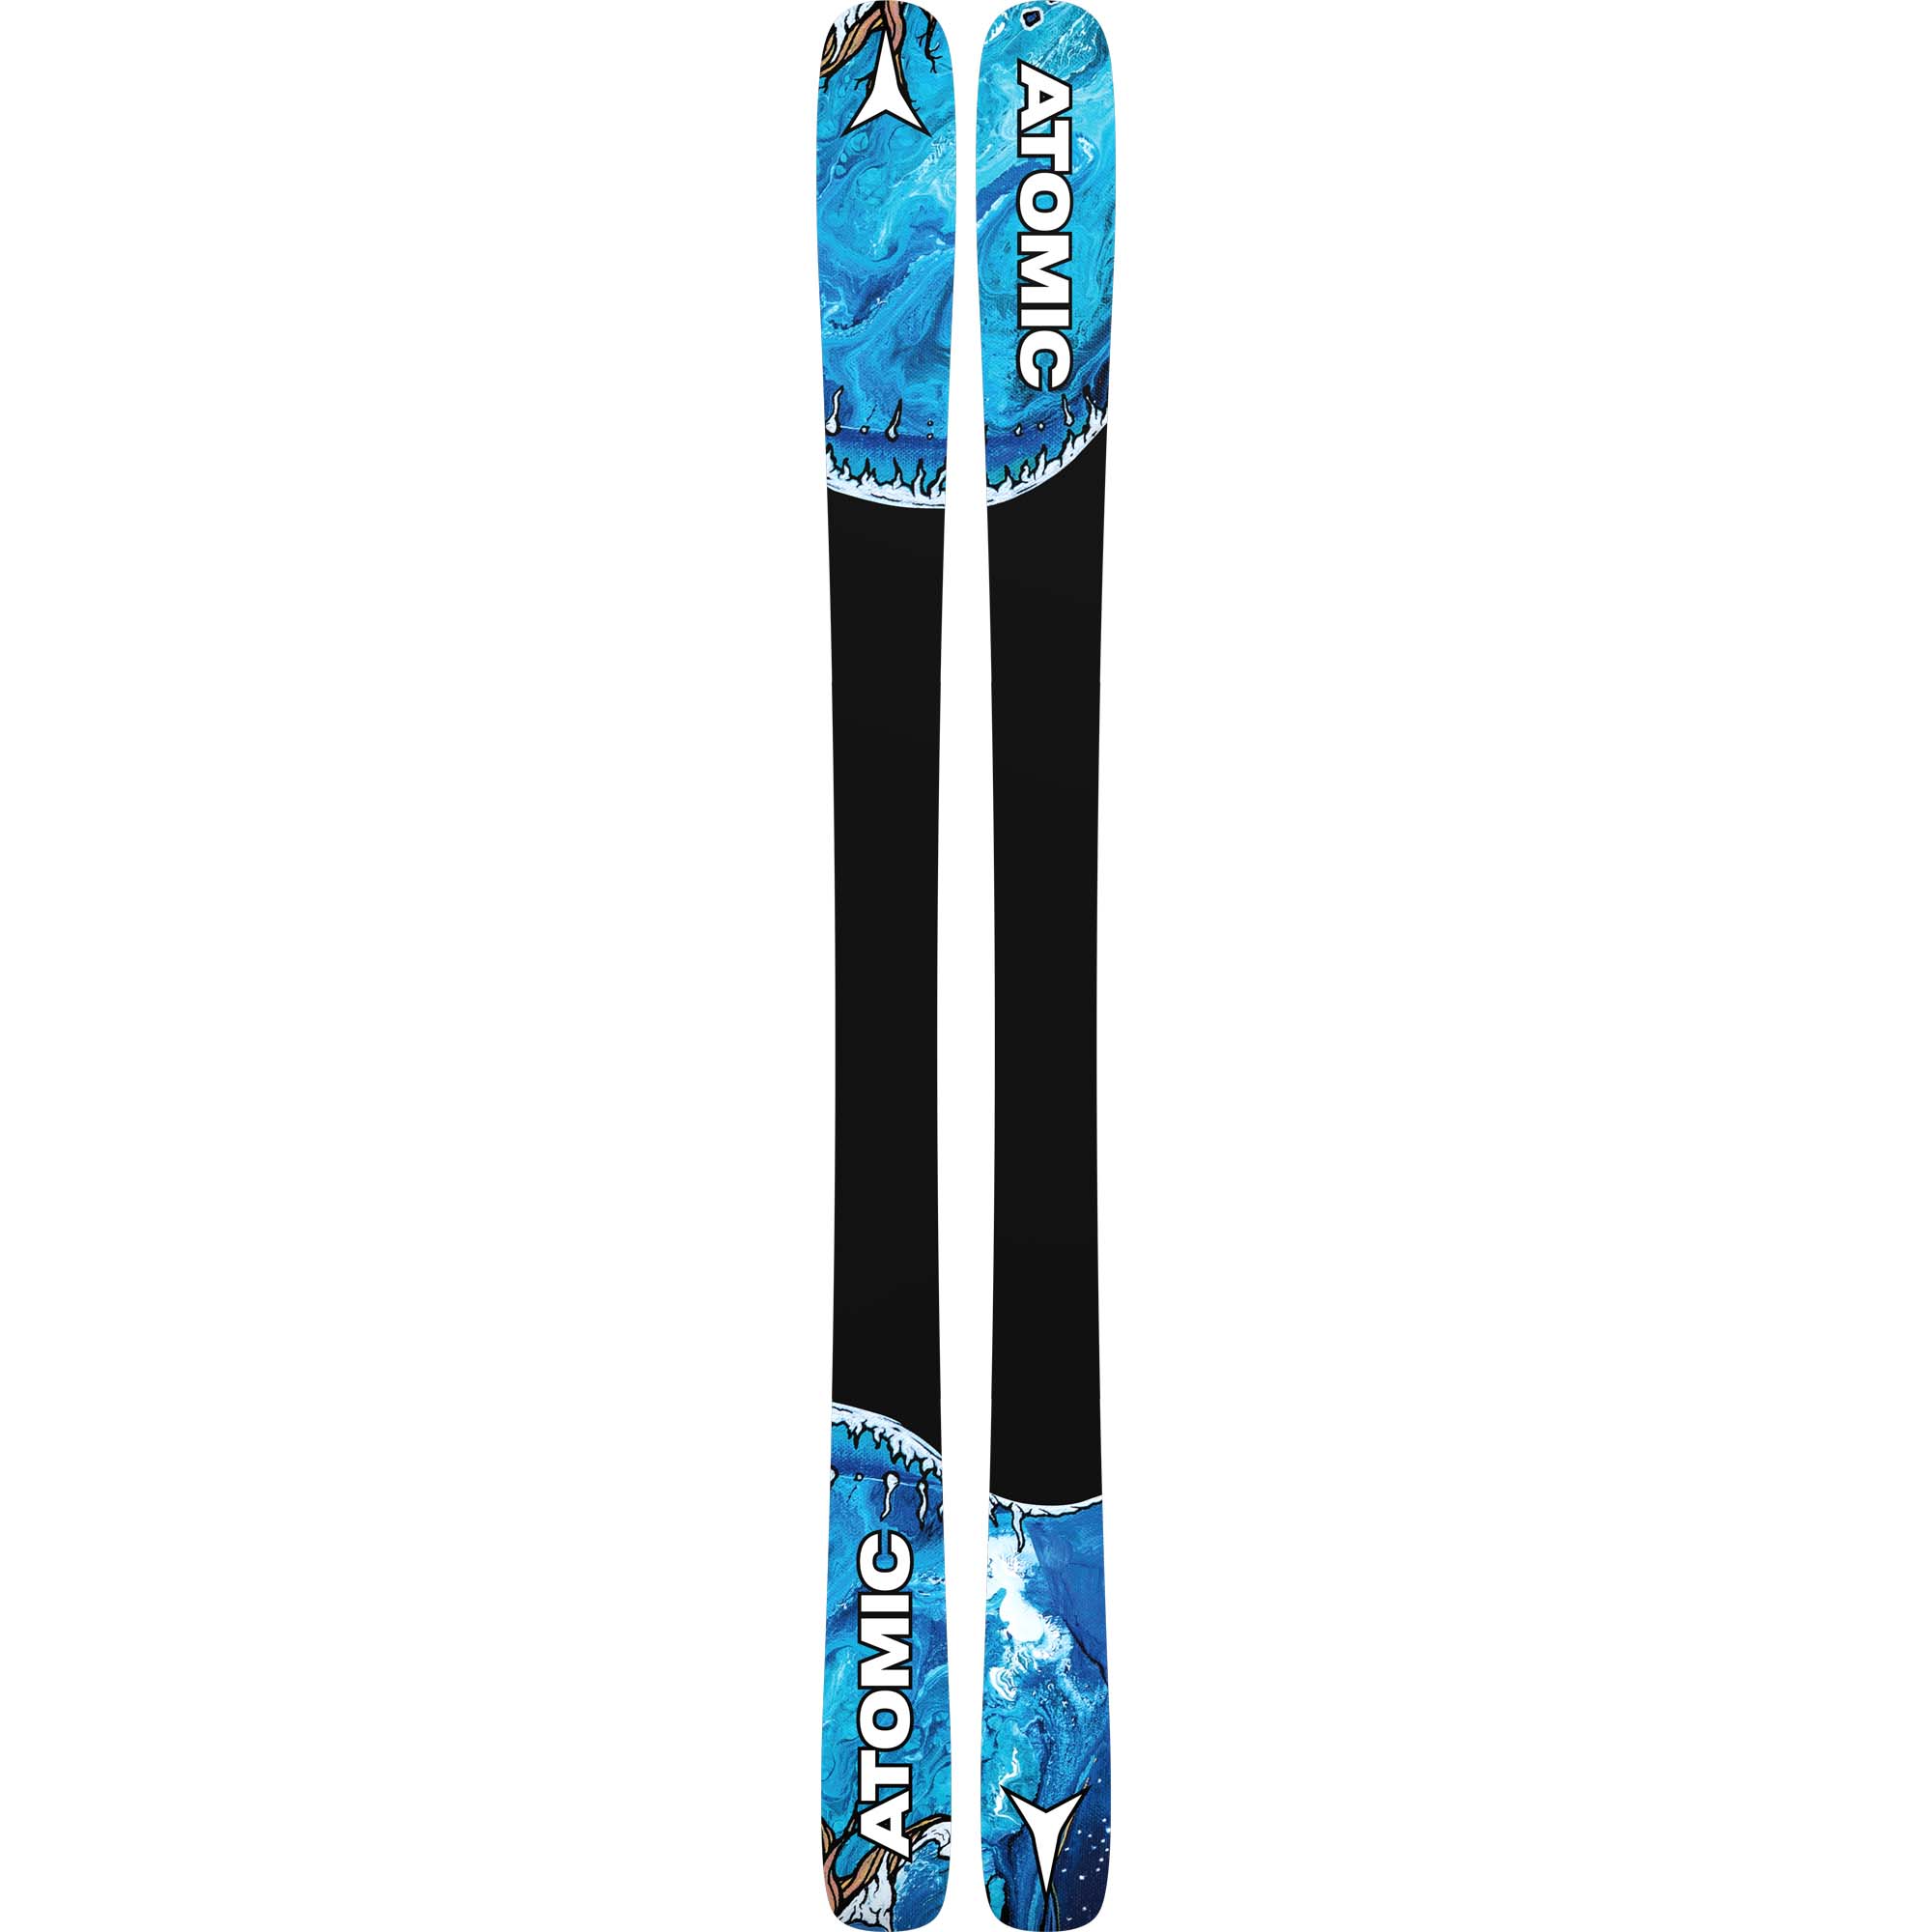 Atomic Bent 85 Skis